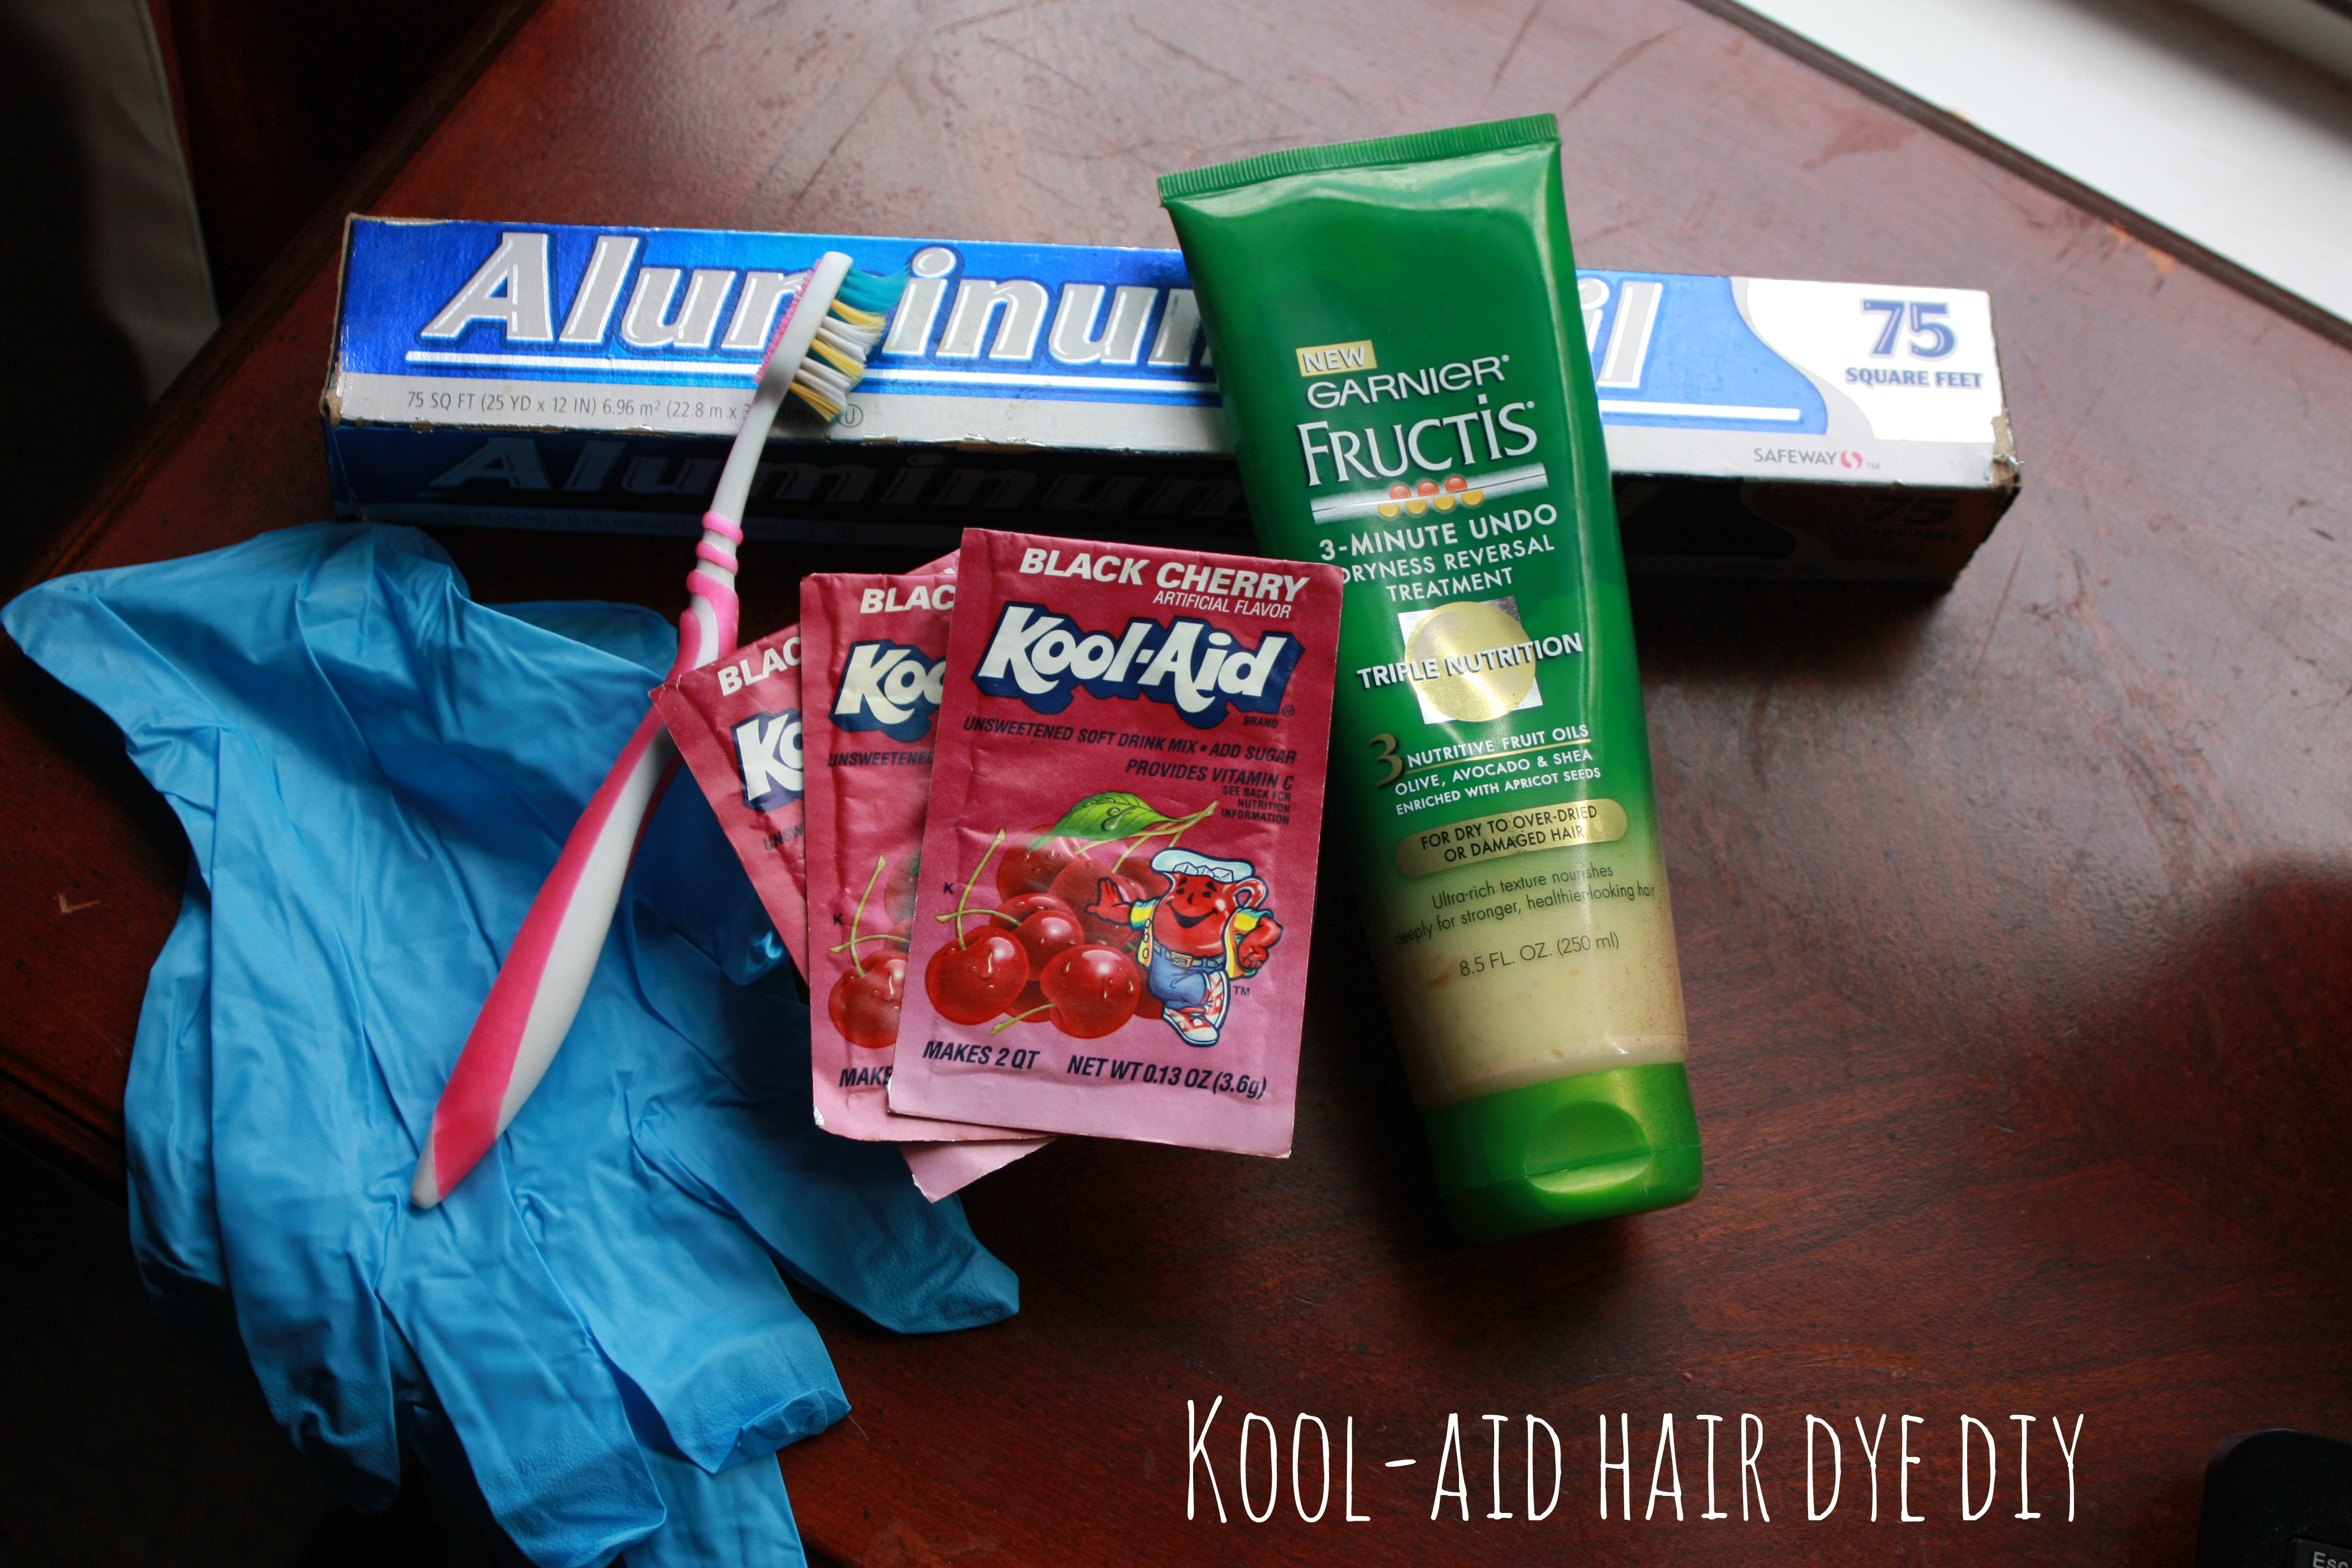 Best ideas about DIY Kool Aid Hair Dye
. Save or Pin Kool Aid Hair Dye DIY Now.